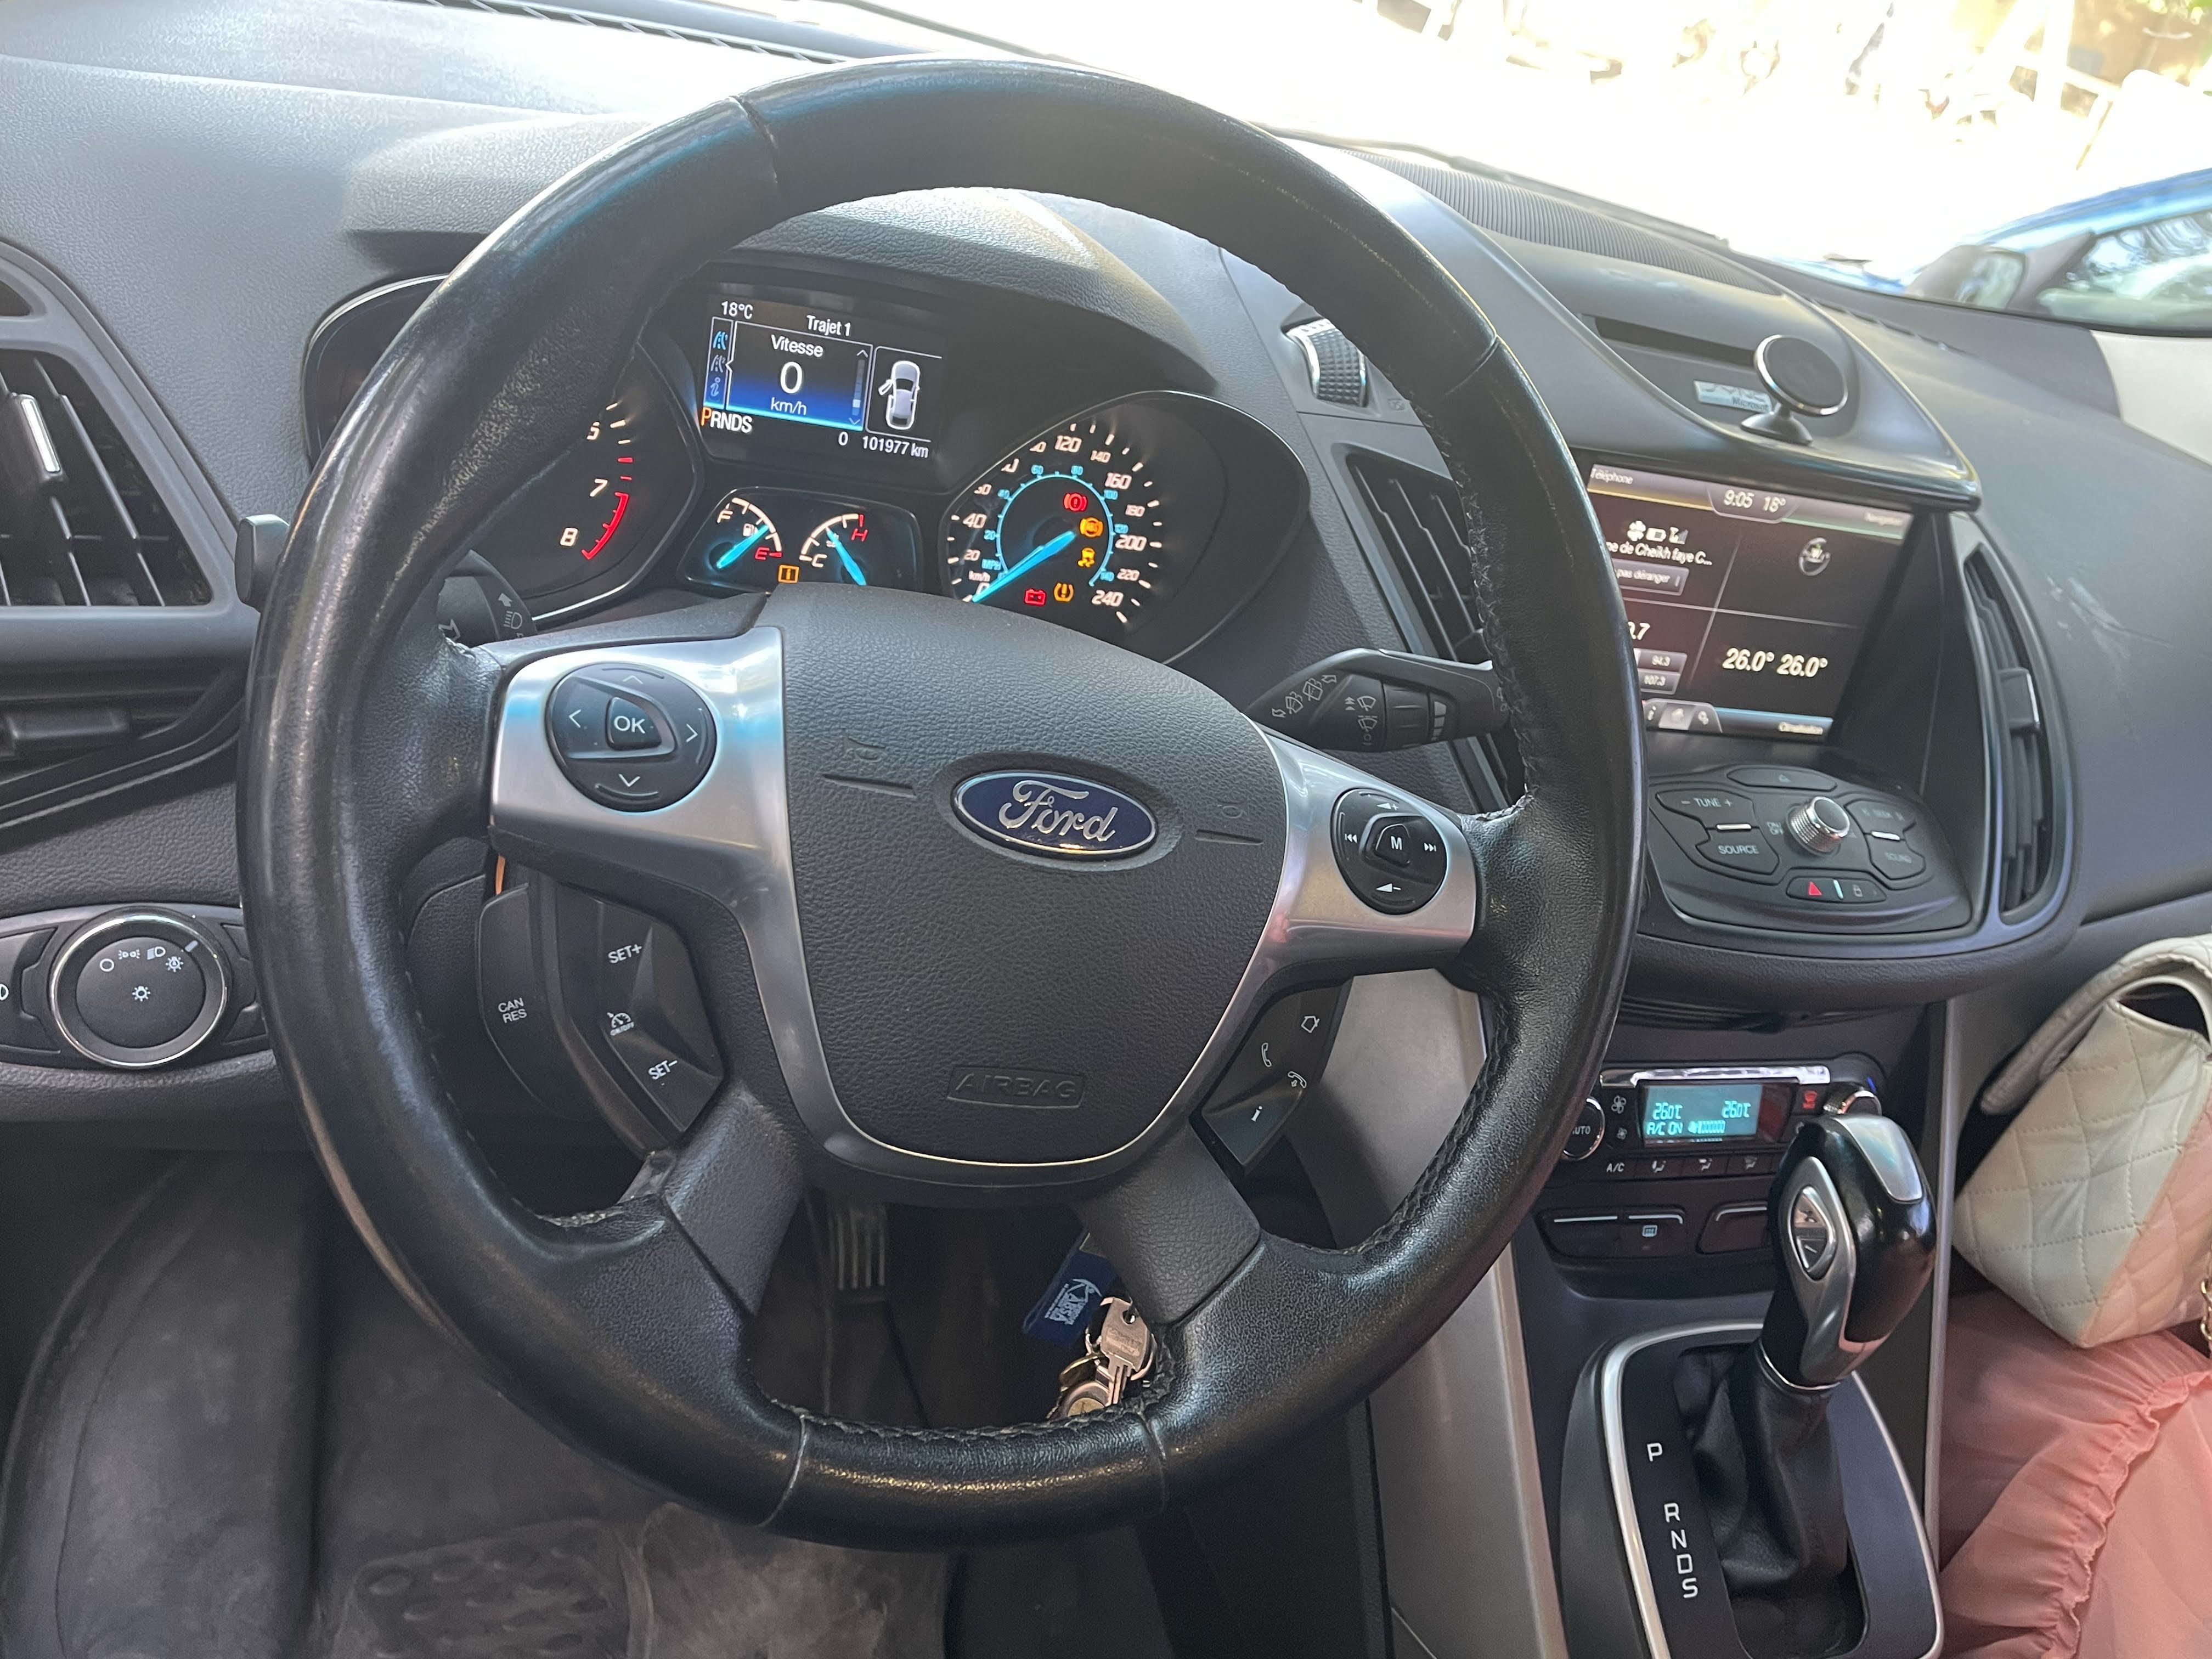 Ford ESCAPE-SE 2014 4